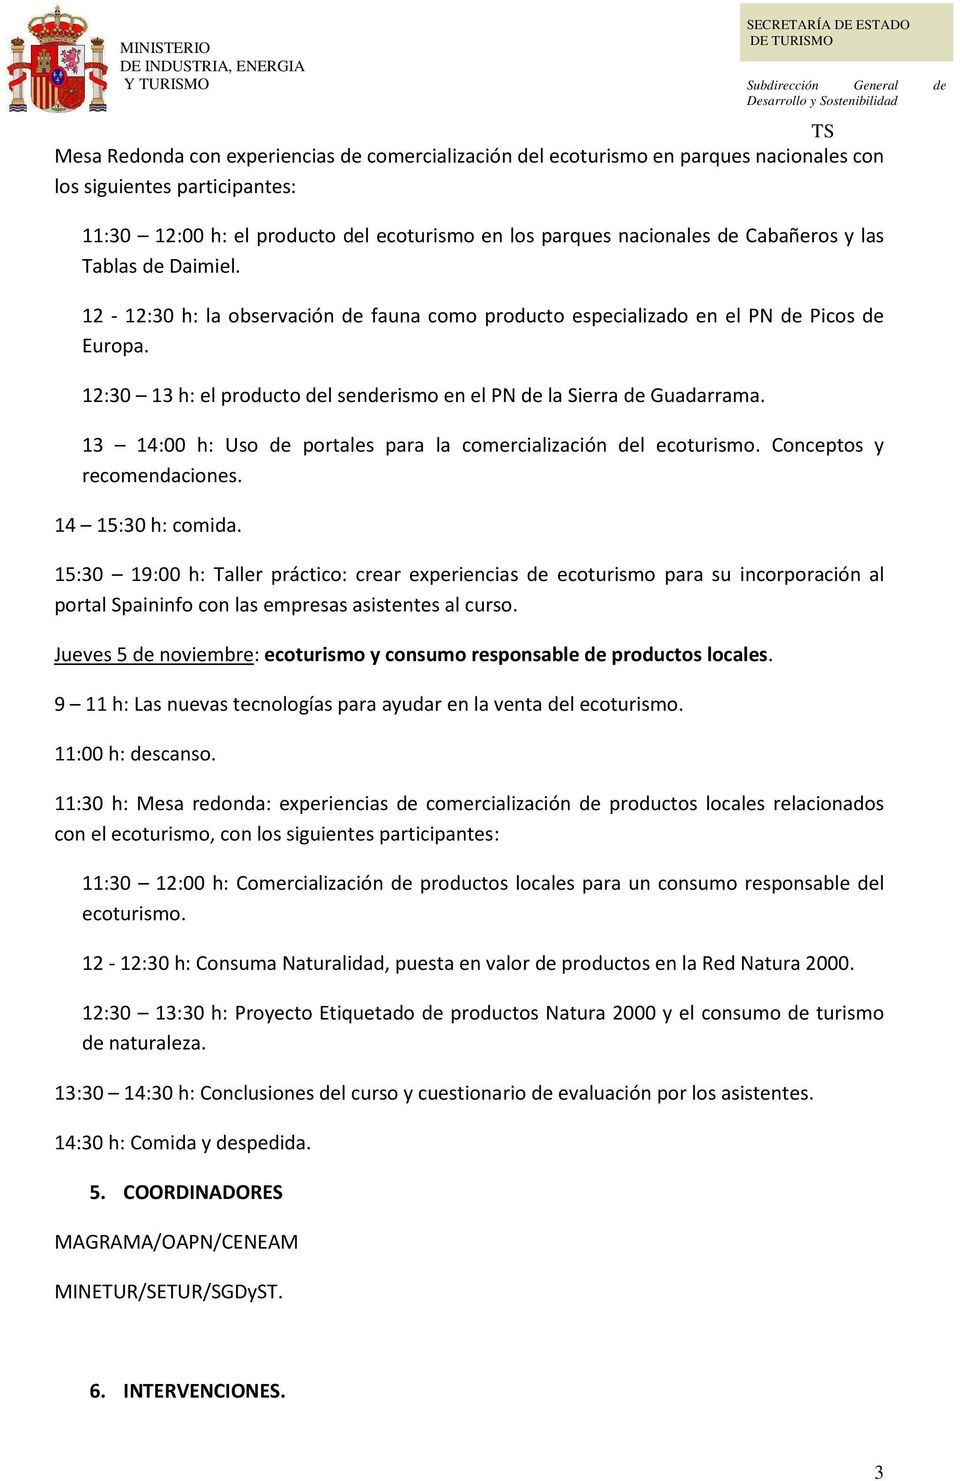 12:30 13 h: el producto del senderismo en el PN de la Sierra de Guadarrama. 13 14:00 h: Uso de portales para la comercialización del ecoturismo. Conceptos y recomendaciones. 14 15:30 h: comida.